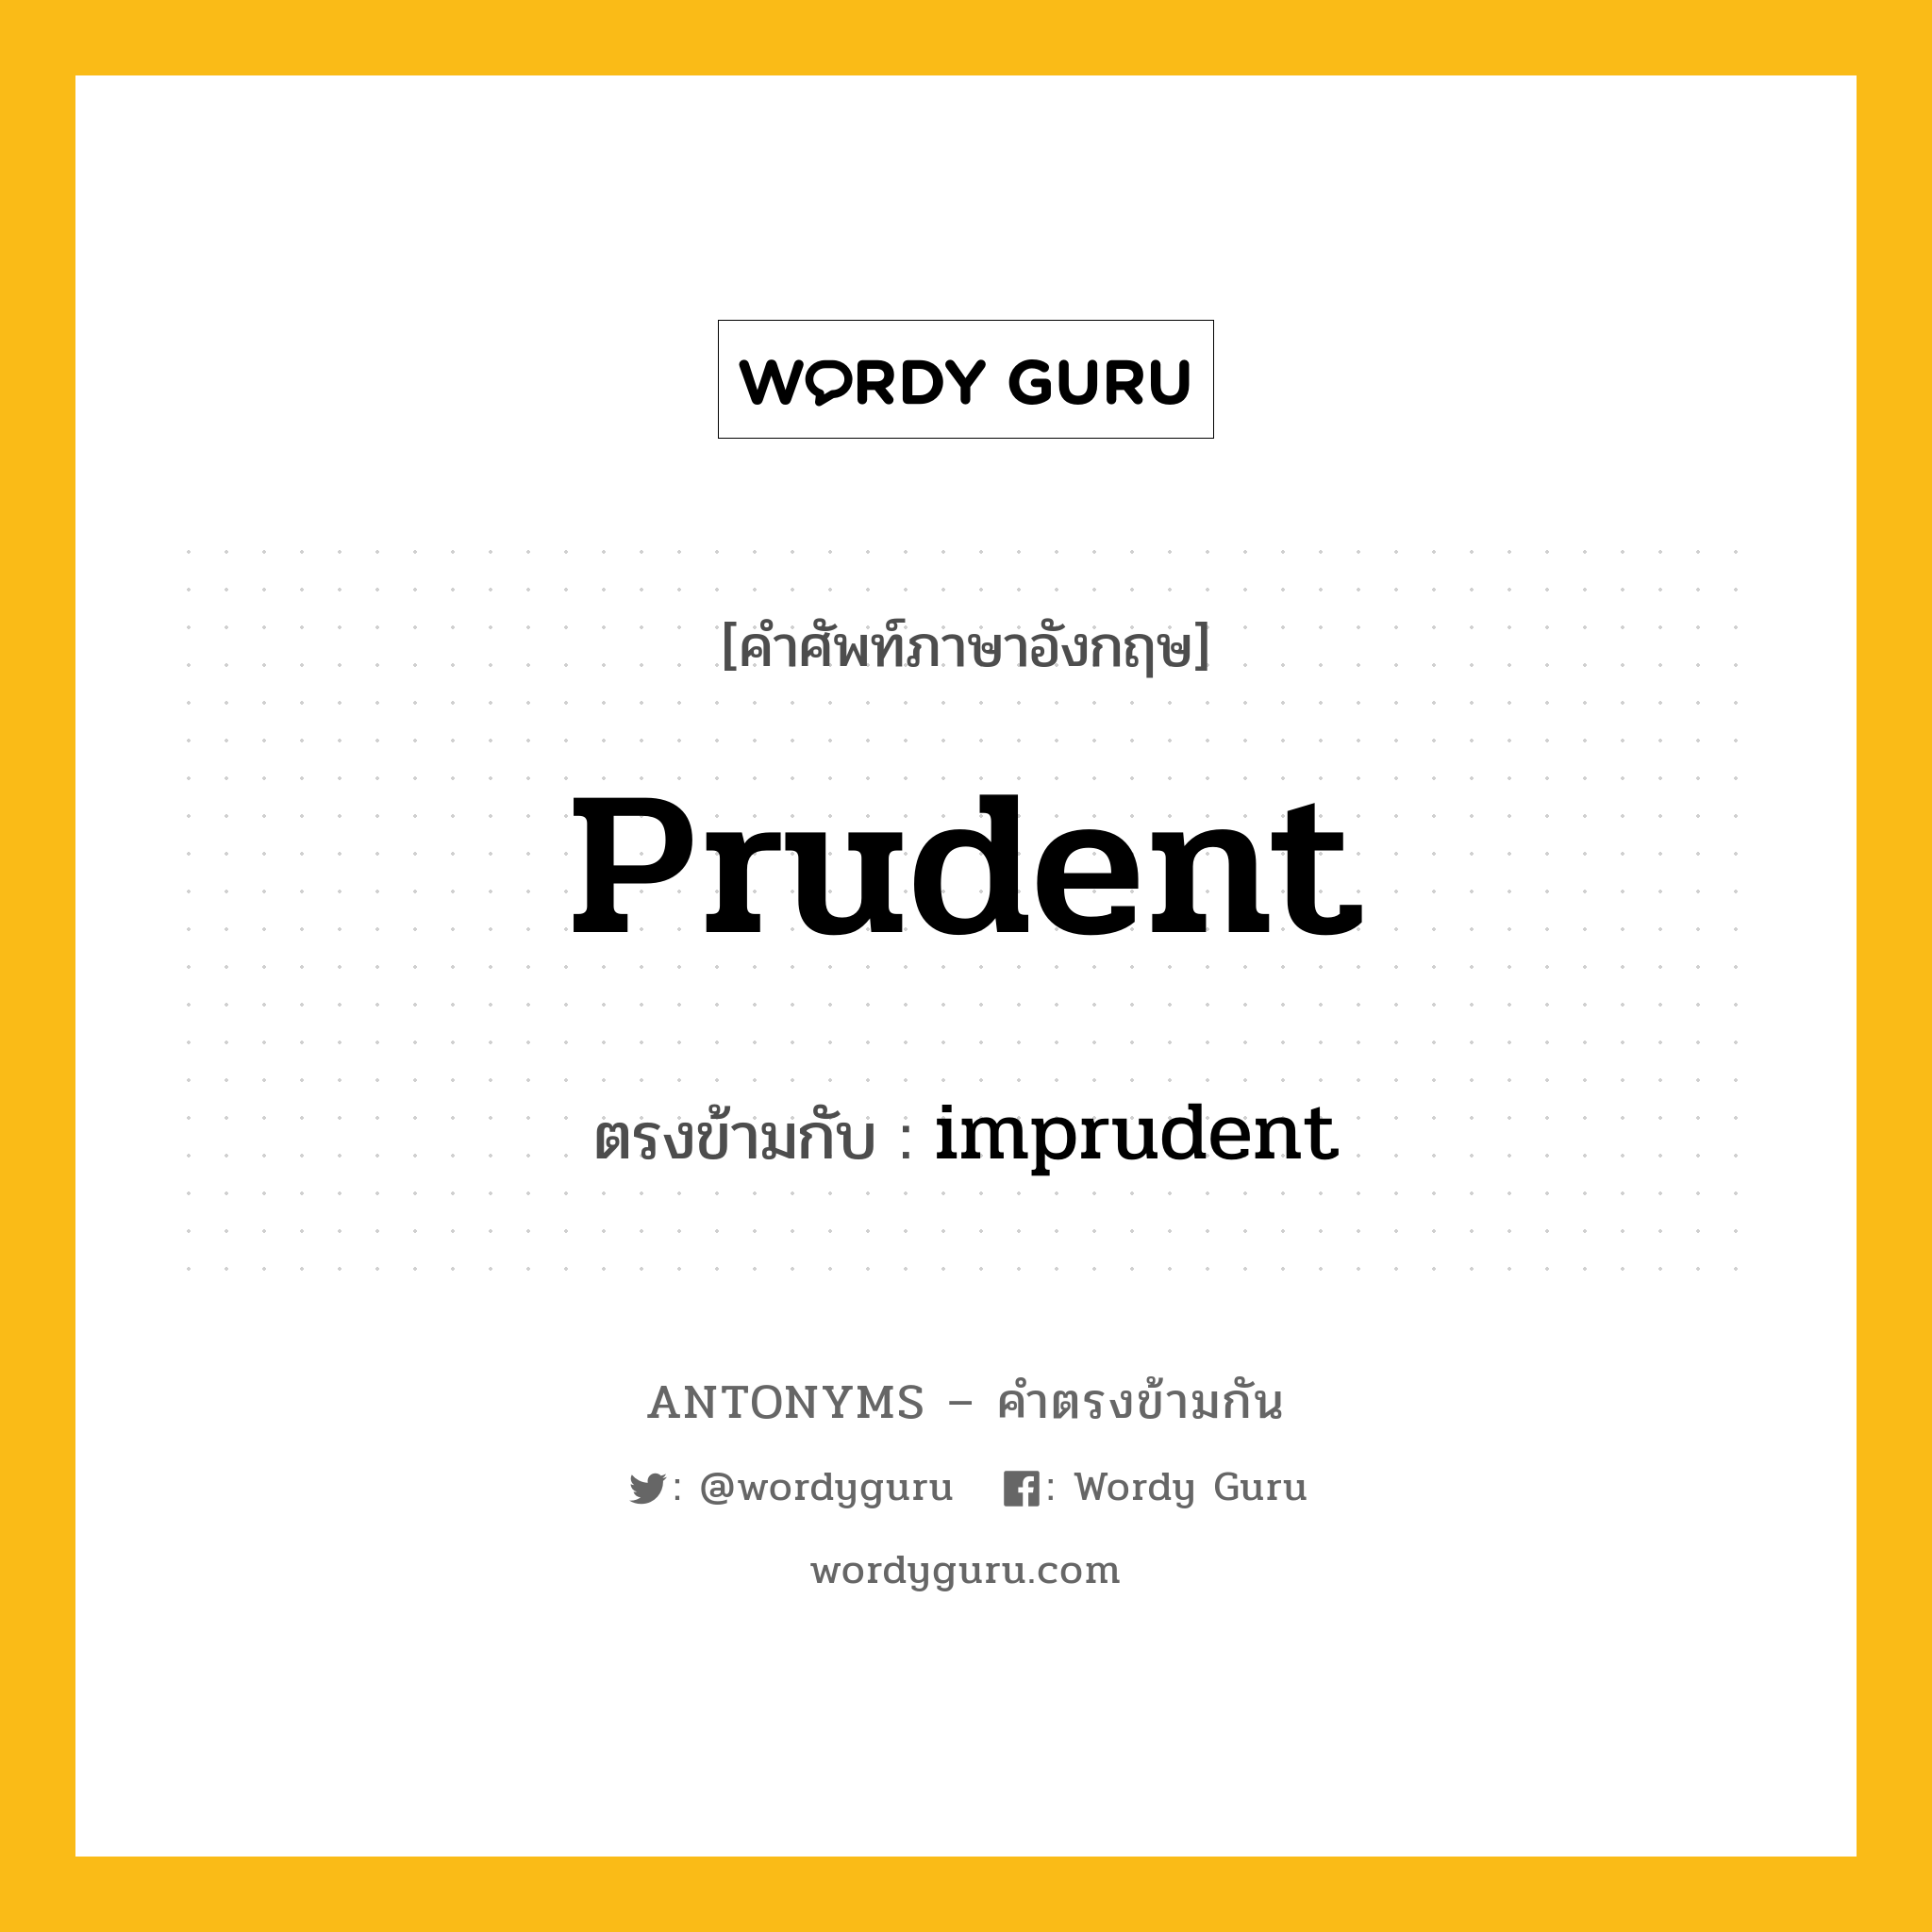 prudent เป็นคำตรงข้ามกับคำไหนบ้าง?, คำศัพท์ภาษาอังกฤษ prudent ตรงข้ามกับ imprudent หมวด imprudent